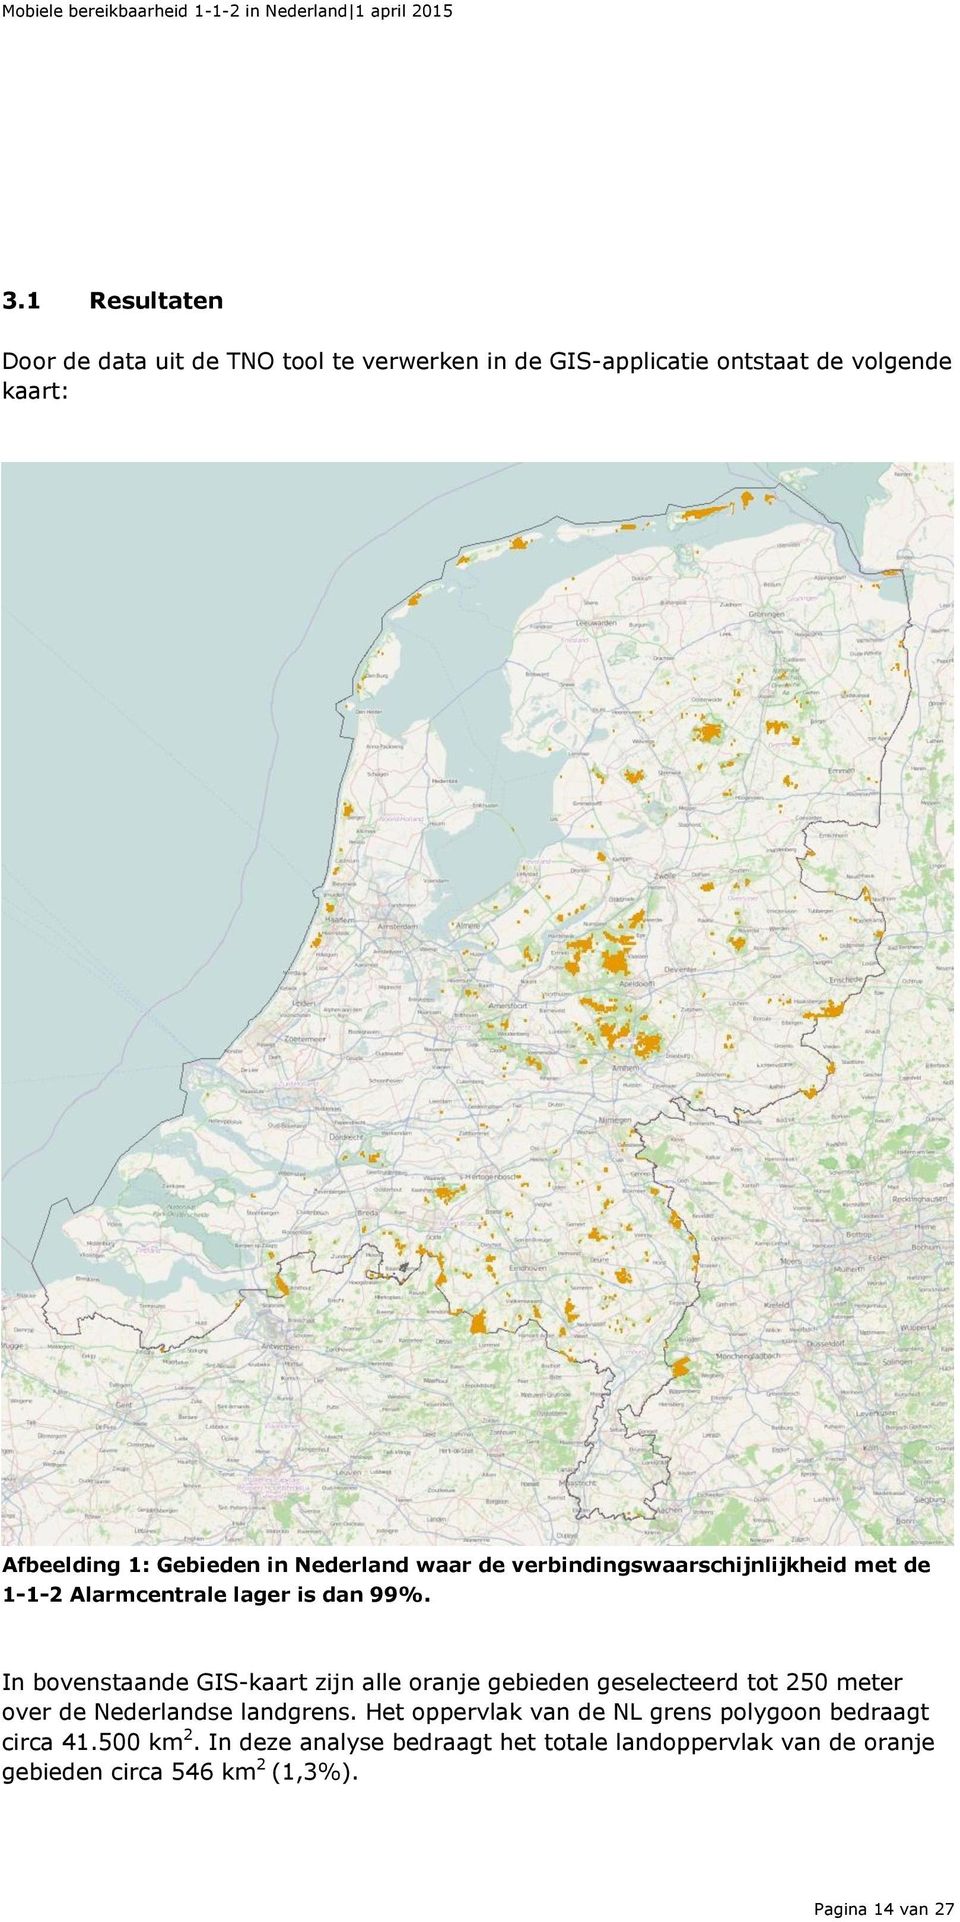 In bovenstaande GIS-kaart zijn alle oranje gebieden geselecteerd tot 250 meter over de Nederlandse landgrens.